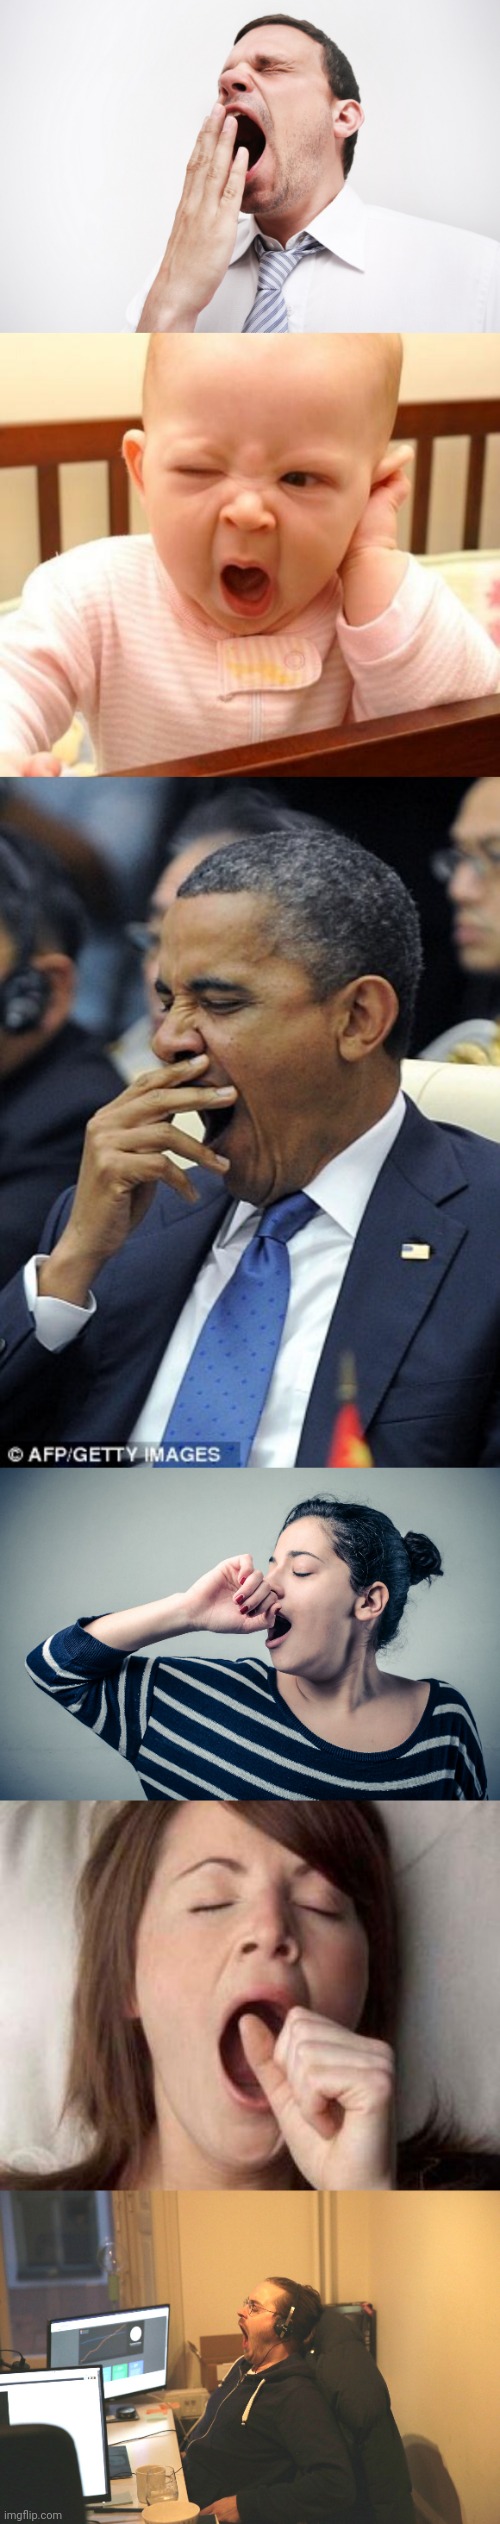 image tagged in yawn,yawn baby,obama yawn,boner vs yawning | made w/ Imgflip meme maker